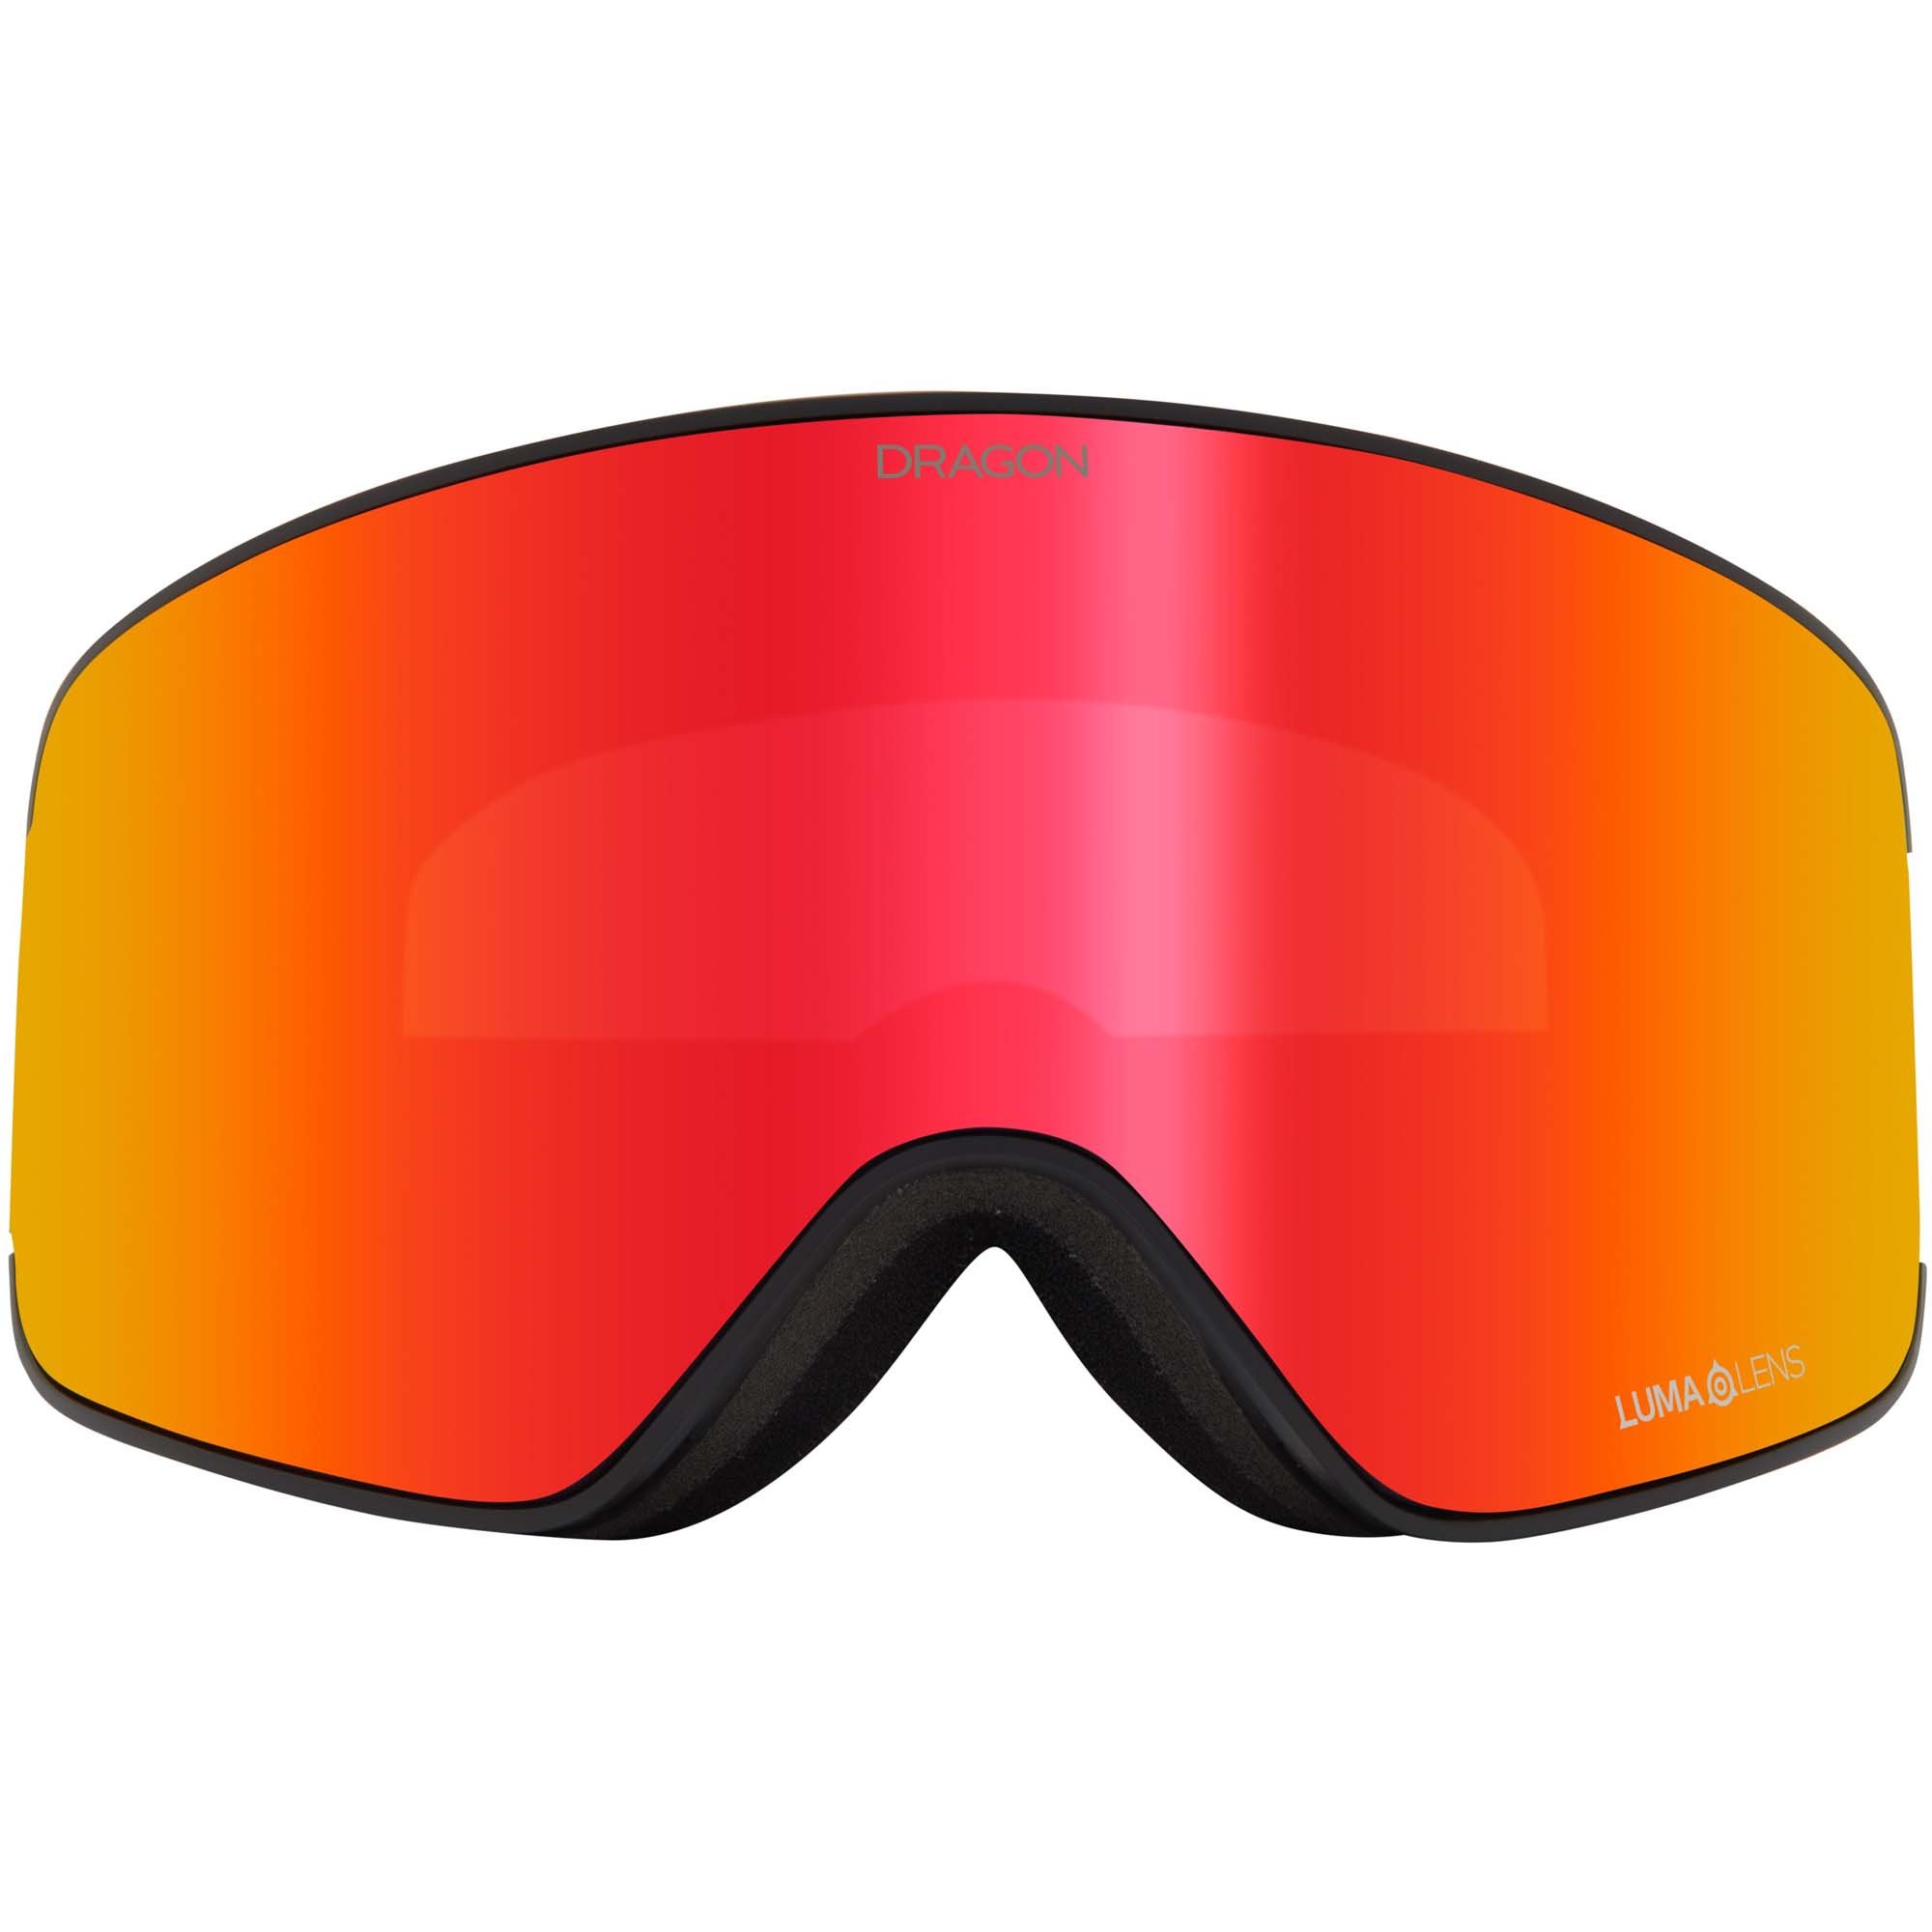 Dragon NFX MAG OTG Snowboard/Ski Goggles